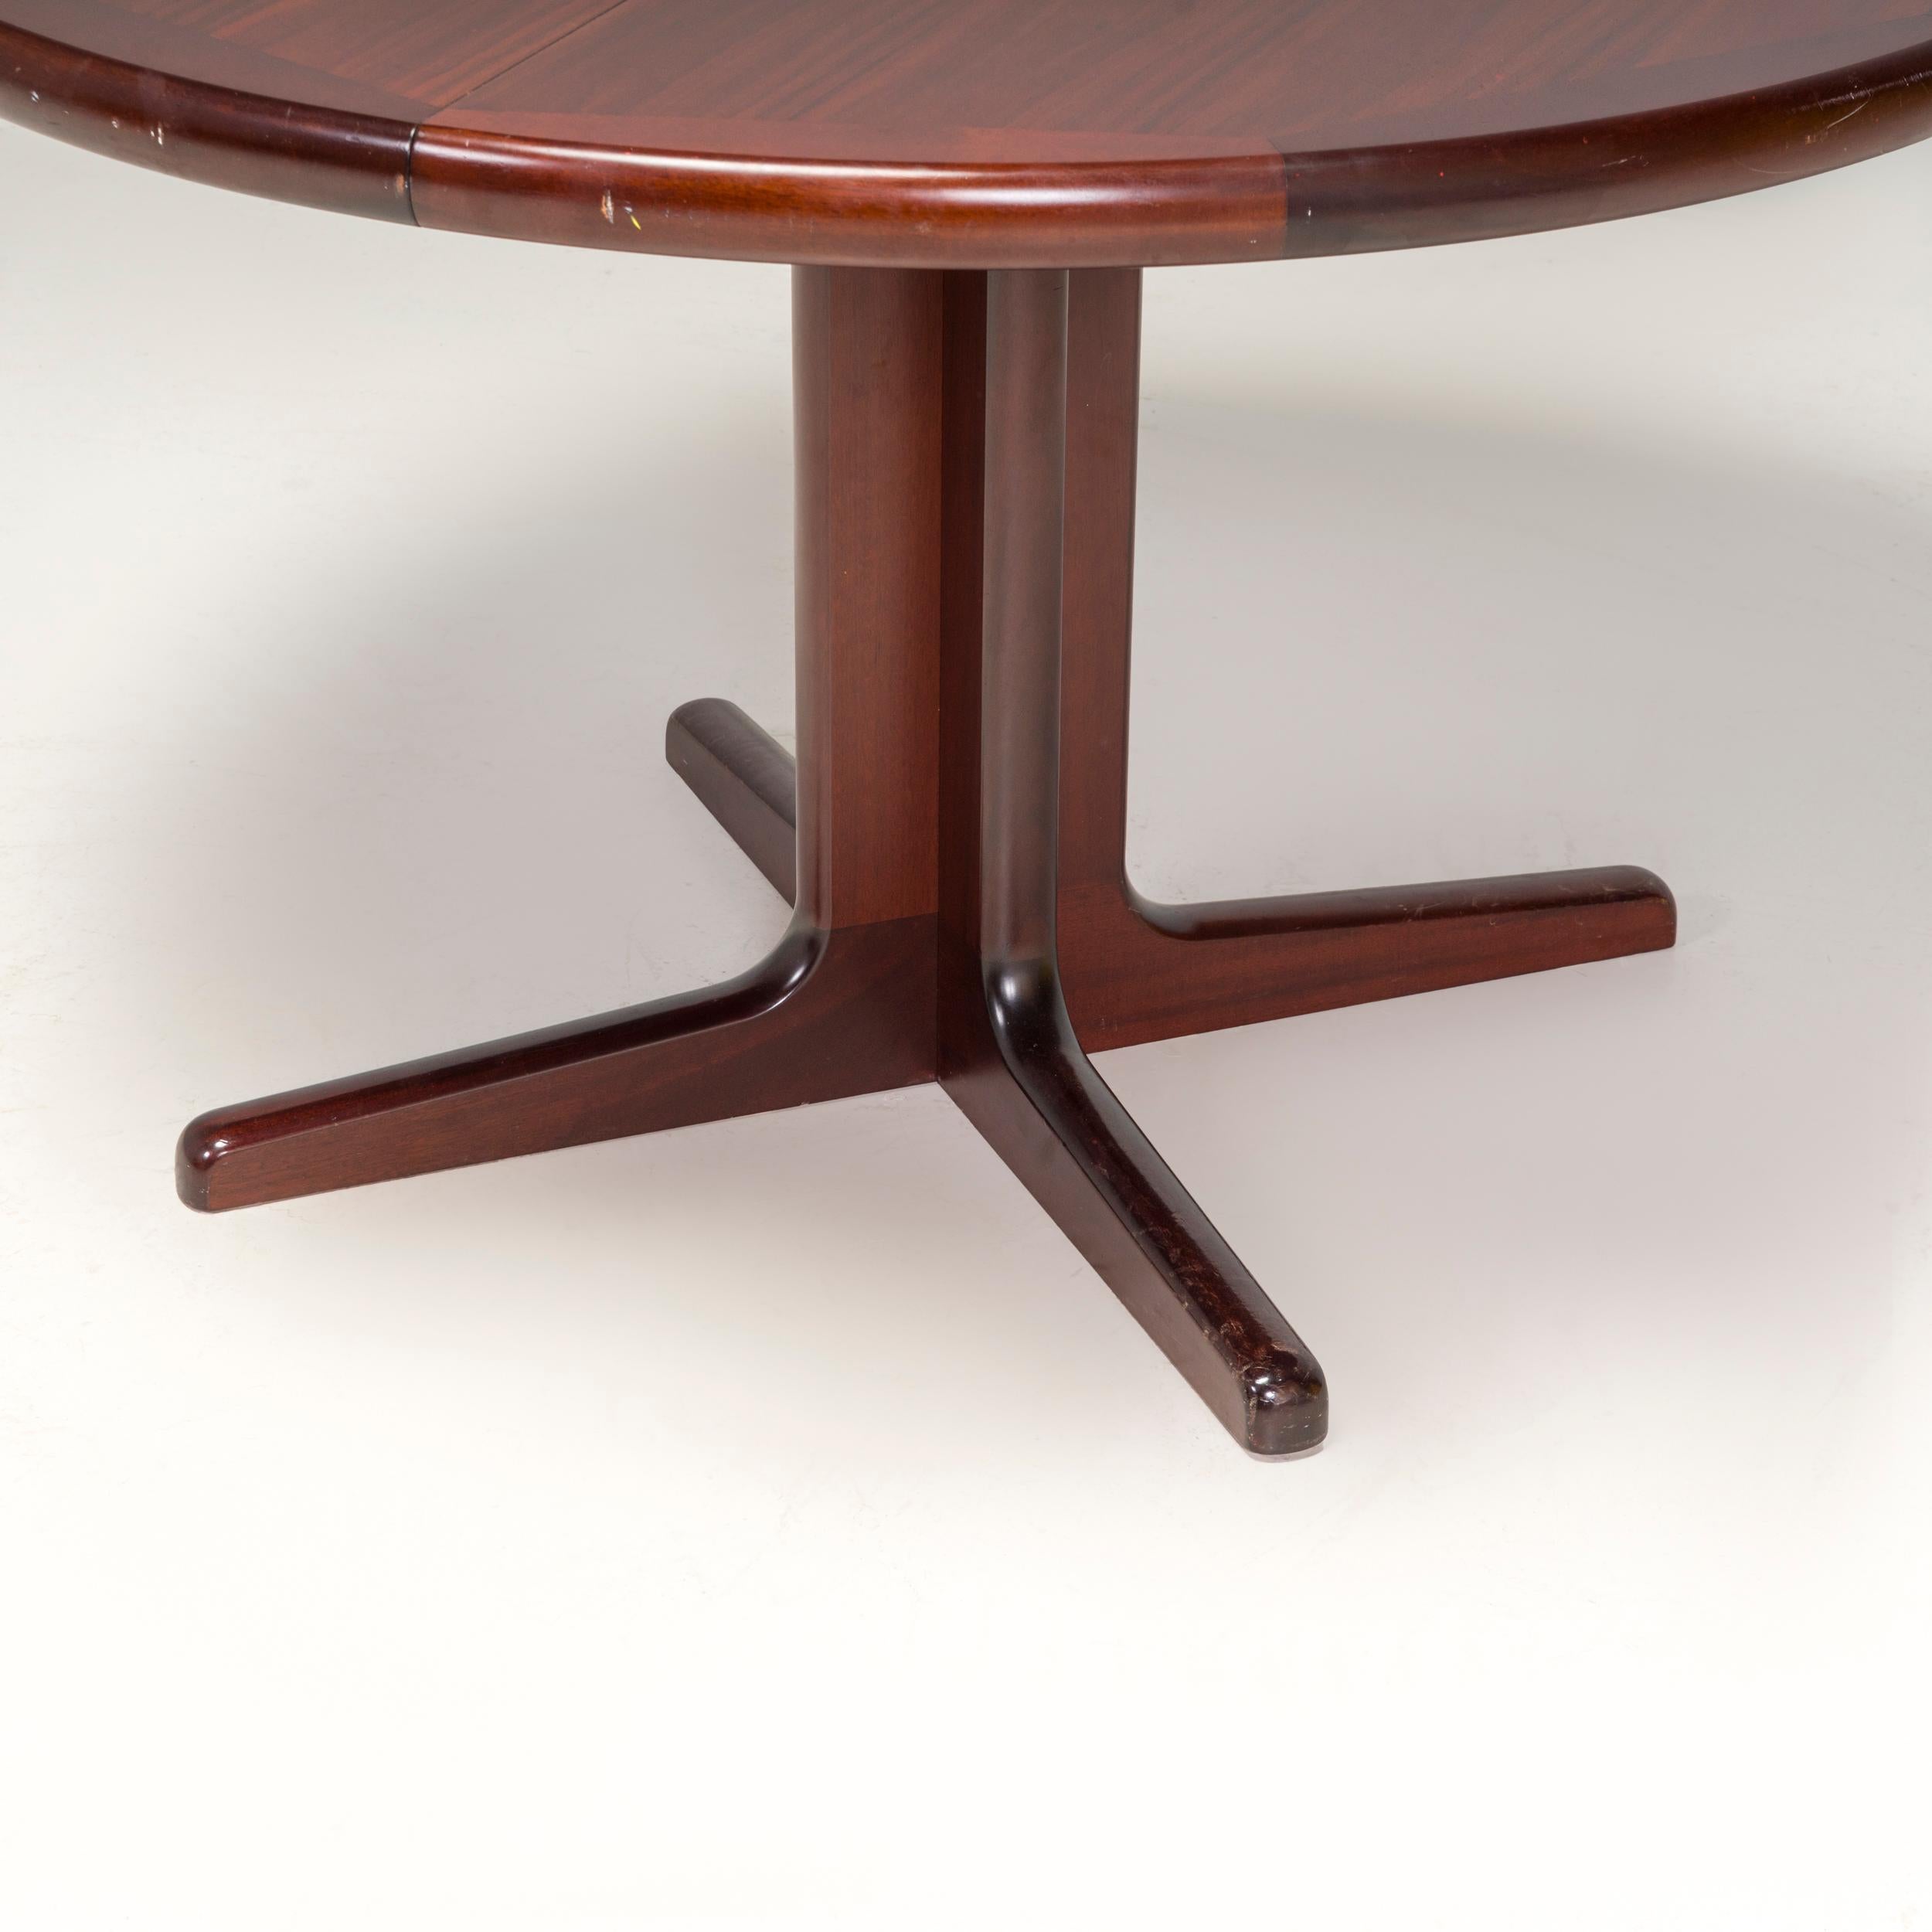 Cette table de salle à manger est un exemple classique du design moderne du milieu du siècle.

Fabriquée en bois de rose, la table de salle à manger présente un plateau circulaire reposant sur deux séries de pieds en forme de V, qui forment une base